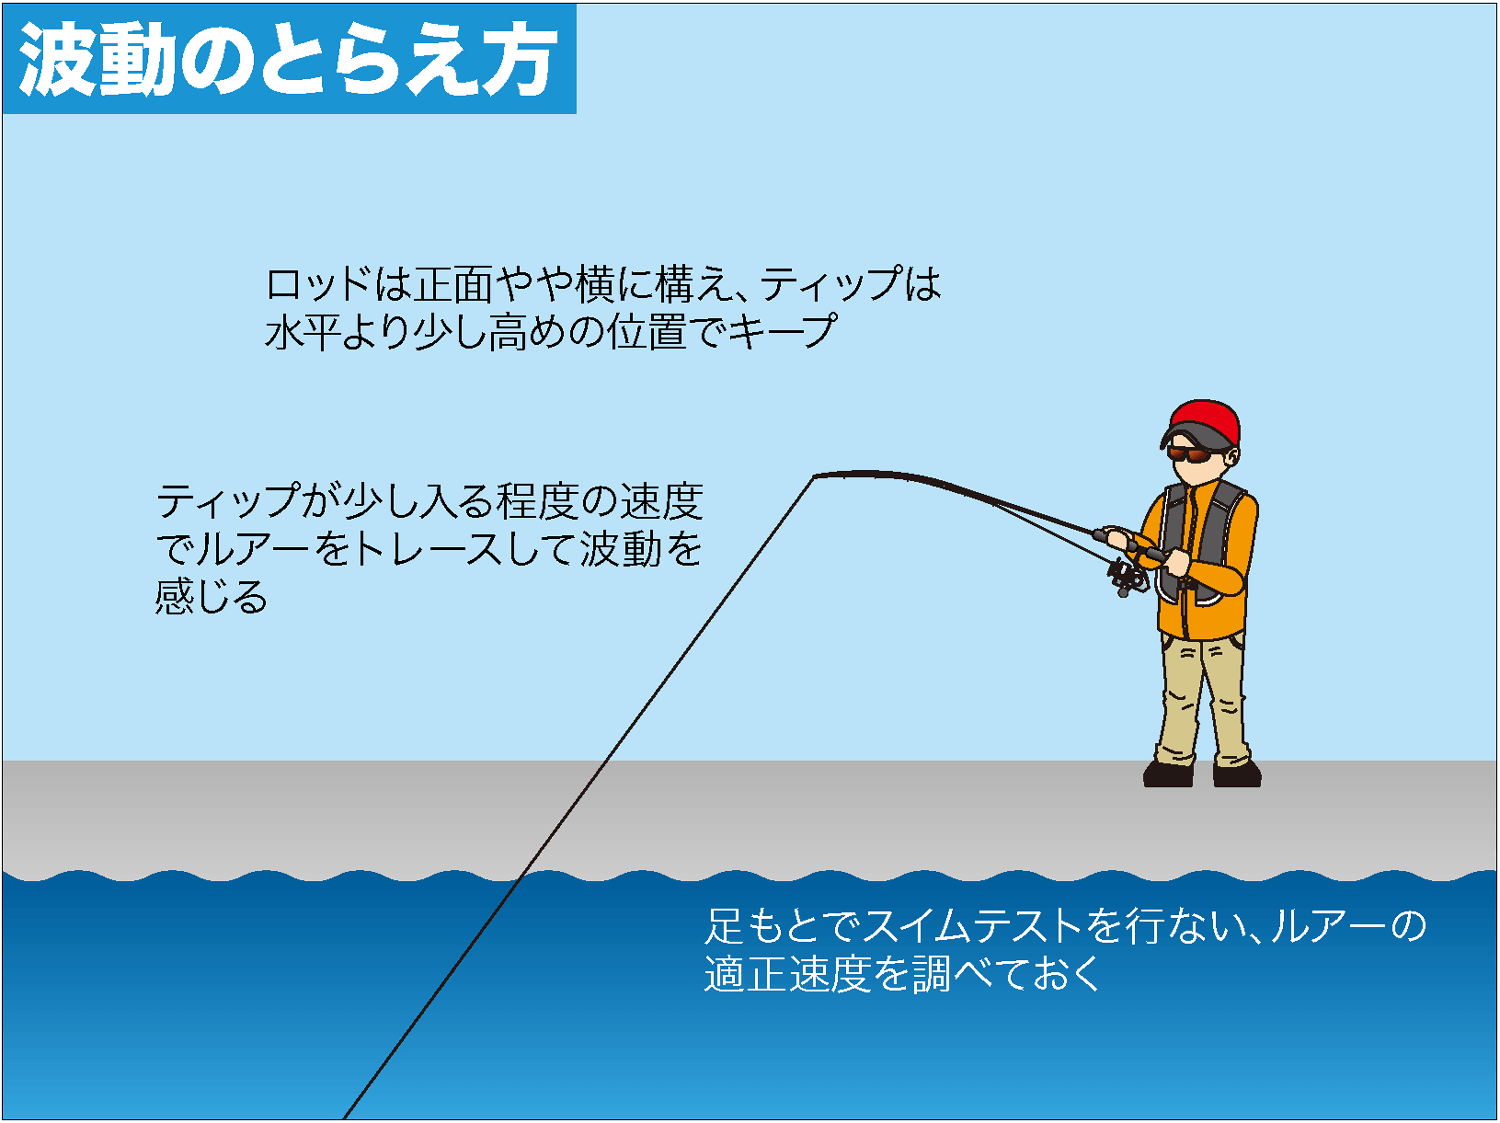 アコウ キジハタ 攻略に有効な波動ローテーション術を大公開 Swマガジンweb 海のルアーマンのための総合情報メディア Part 2